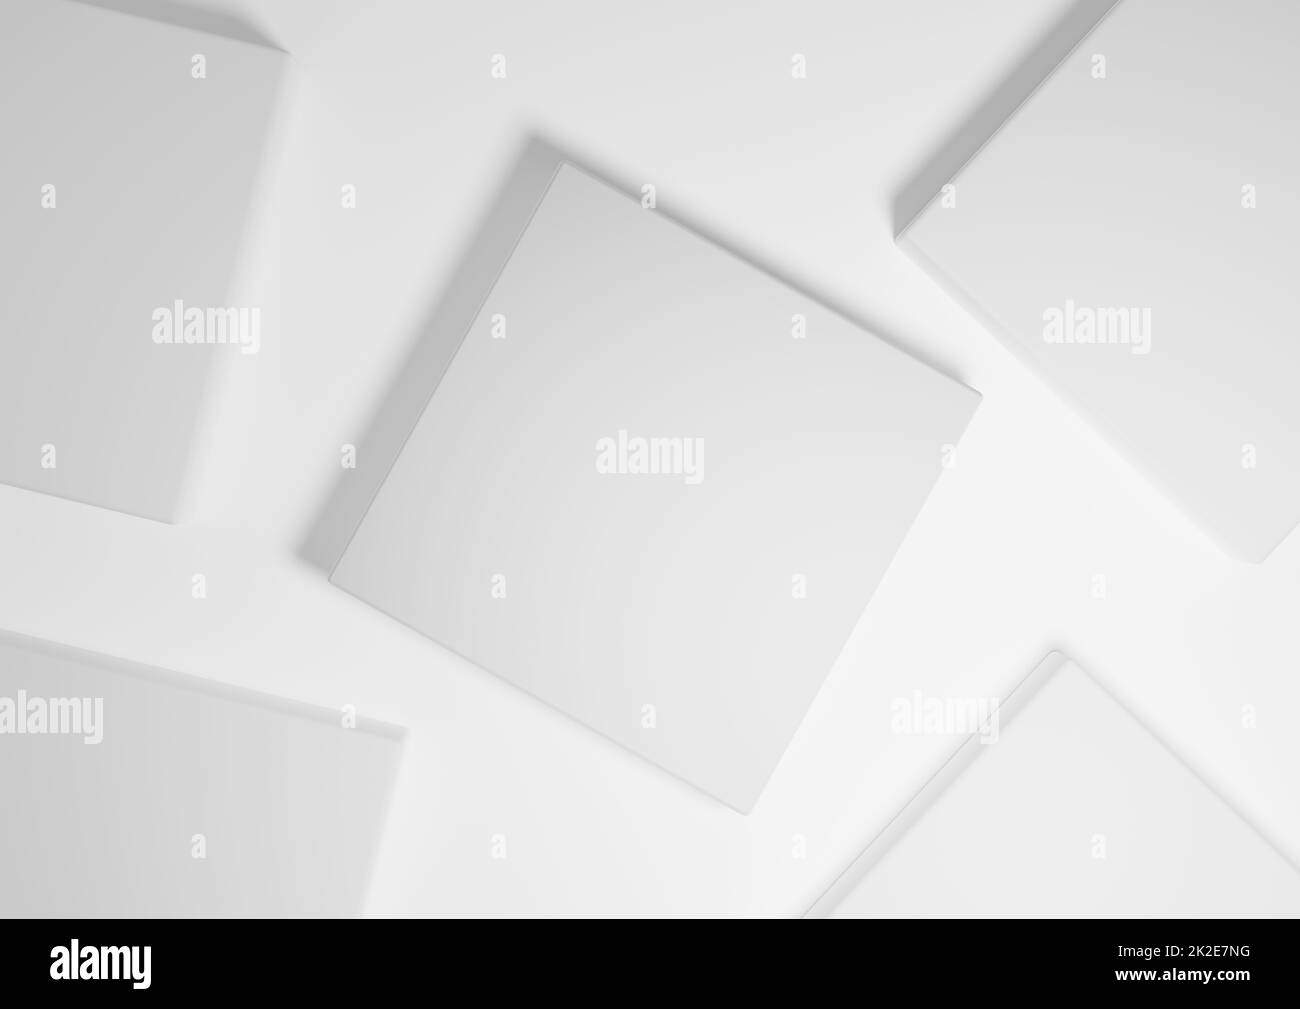 Weiß, hellgrau, schwarz und weiß, 3D Render minimaler, einfacher Draufsicht flacher Produktdisplay-Hintergrund mit Podestständer und geometrischen Formen Stockfoto